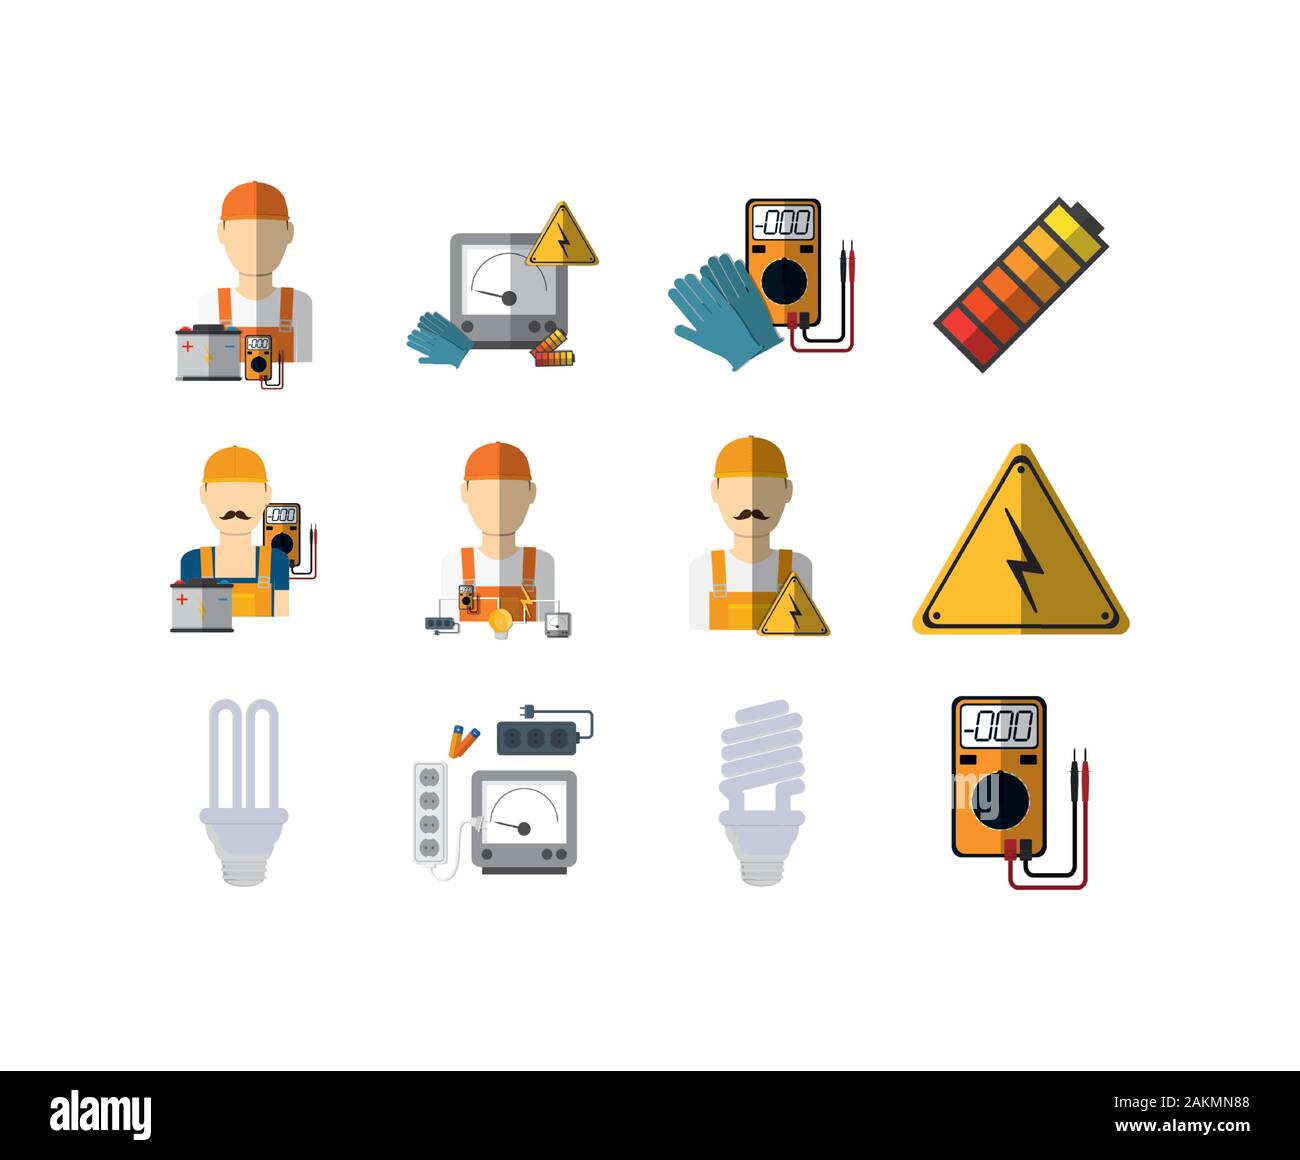 L'équipement électrique design icon set, la puissance de la technologie de  l'énergie électrique de l'outil industriel de l'industrie de la  construction et l'illustration vectorielle thème Image Vectorielle Stock -  Alamy